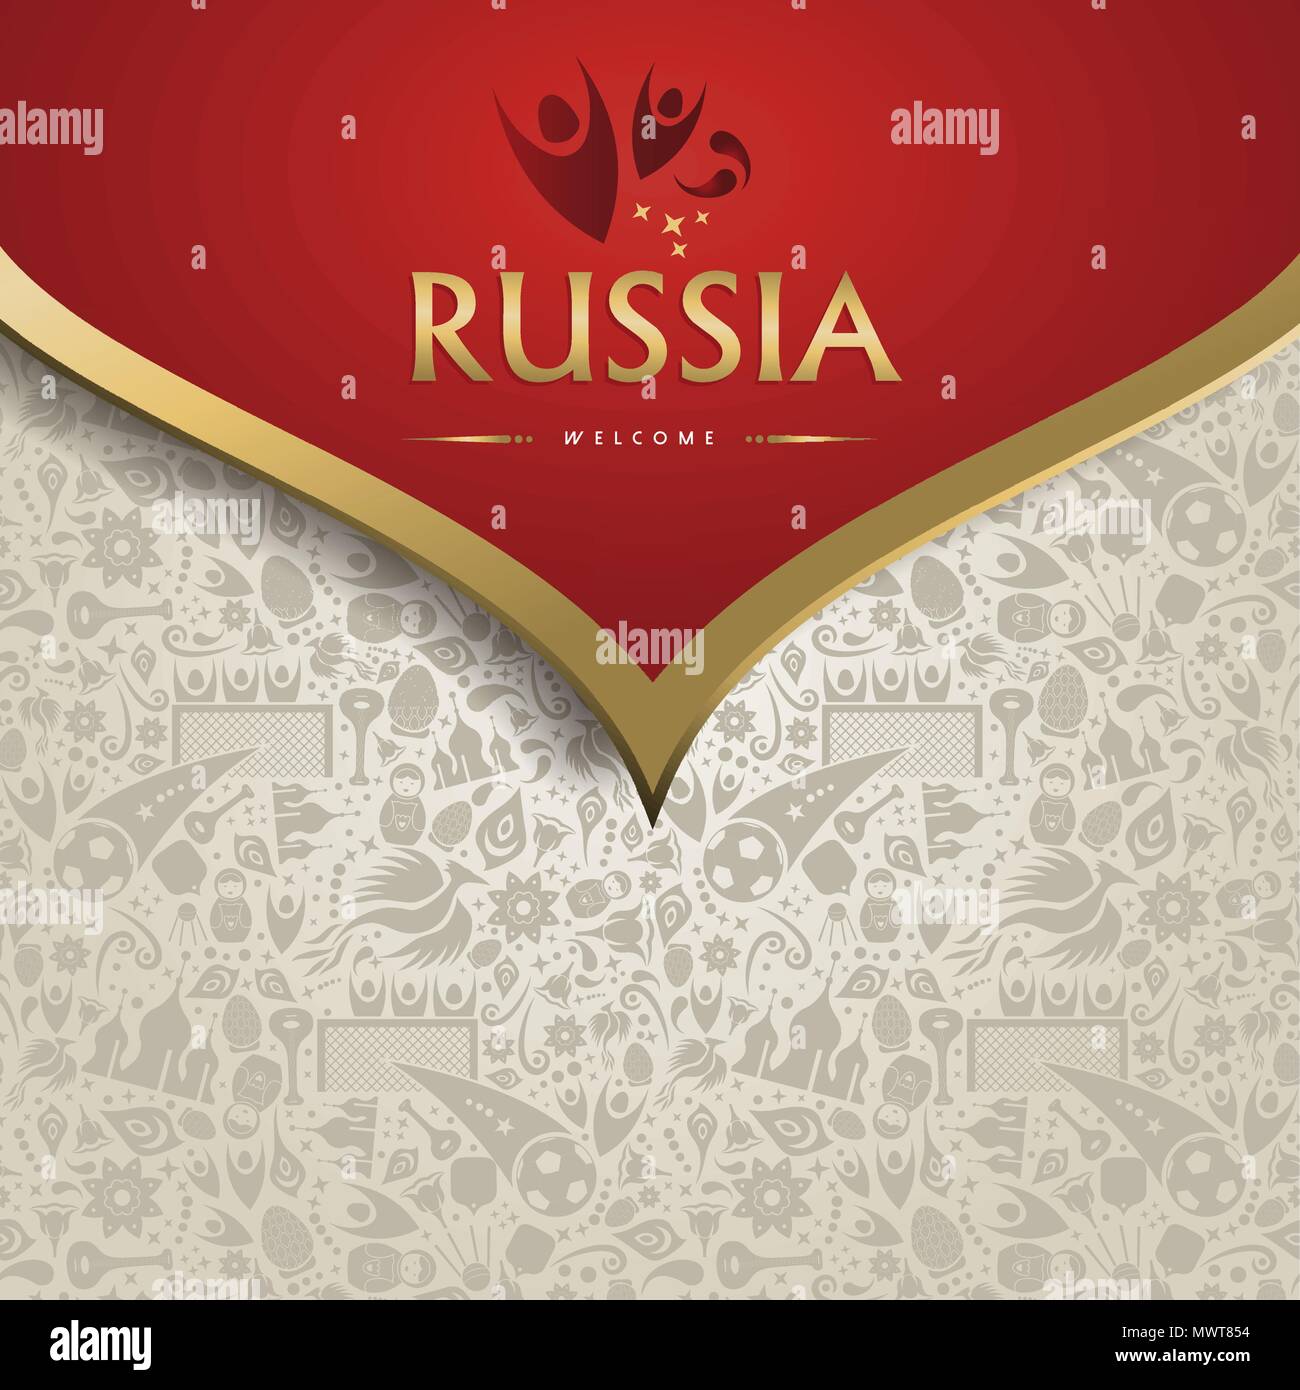 Nach Russland symbol Textur Hintergrund mit gold Dekoration Willkommen. Traditionelle russische Kultur Vorlage für einen 2018 Fußball-Event. EPS 10 Vektor. Stock Vektor